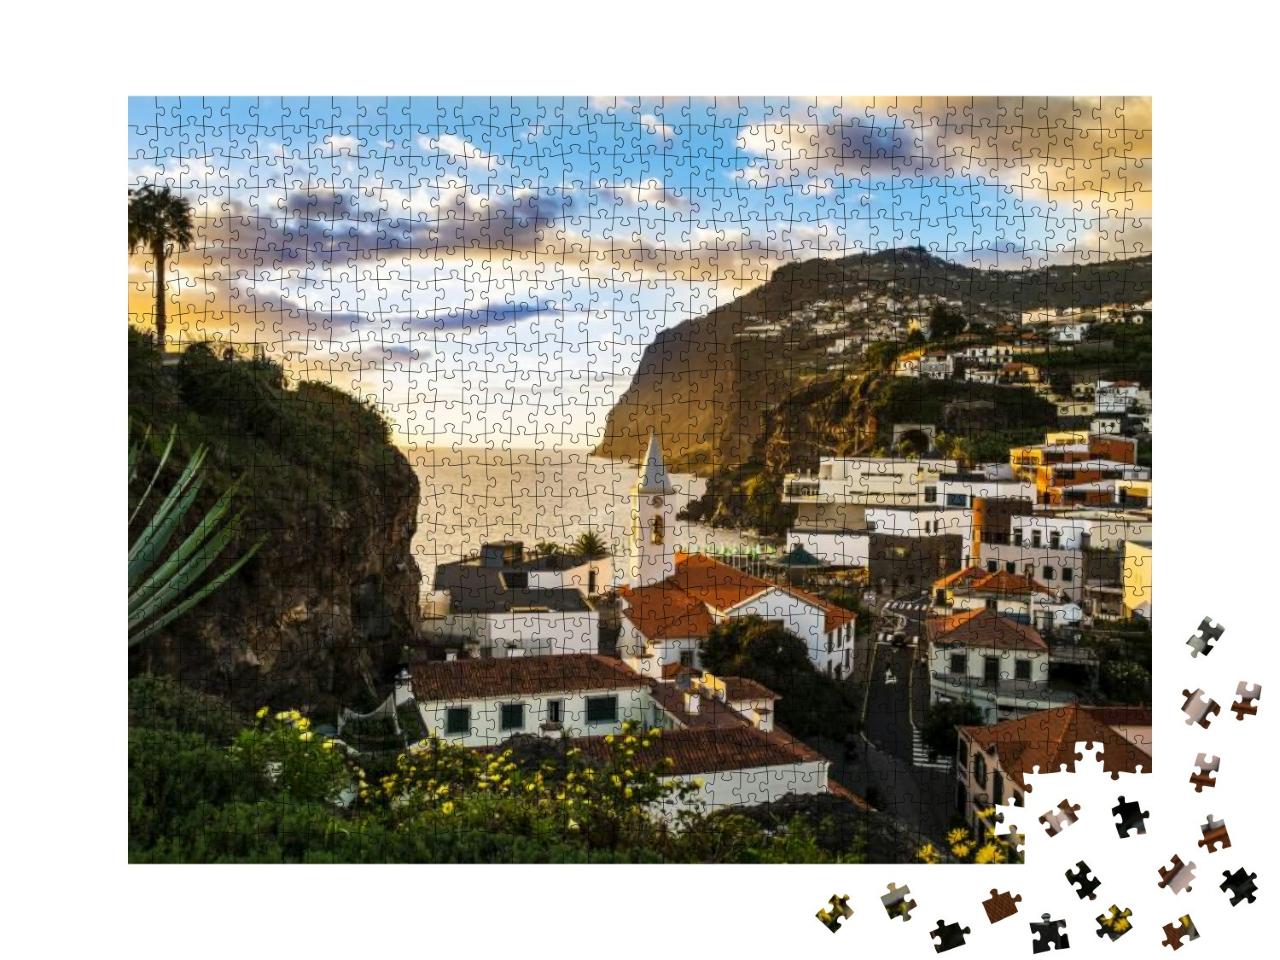 Camara De Lobos, Small Port on the Island of Madeira... Jigsaw Puzzle with 1000 pieces